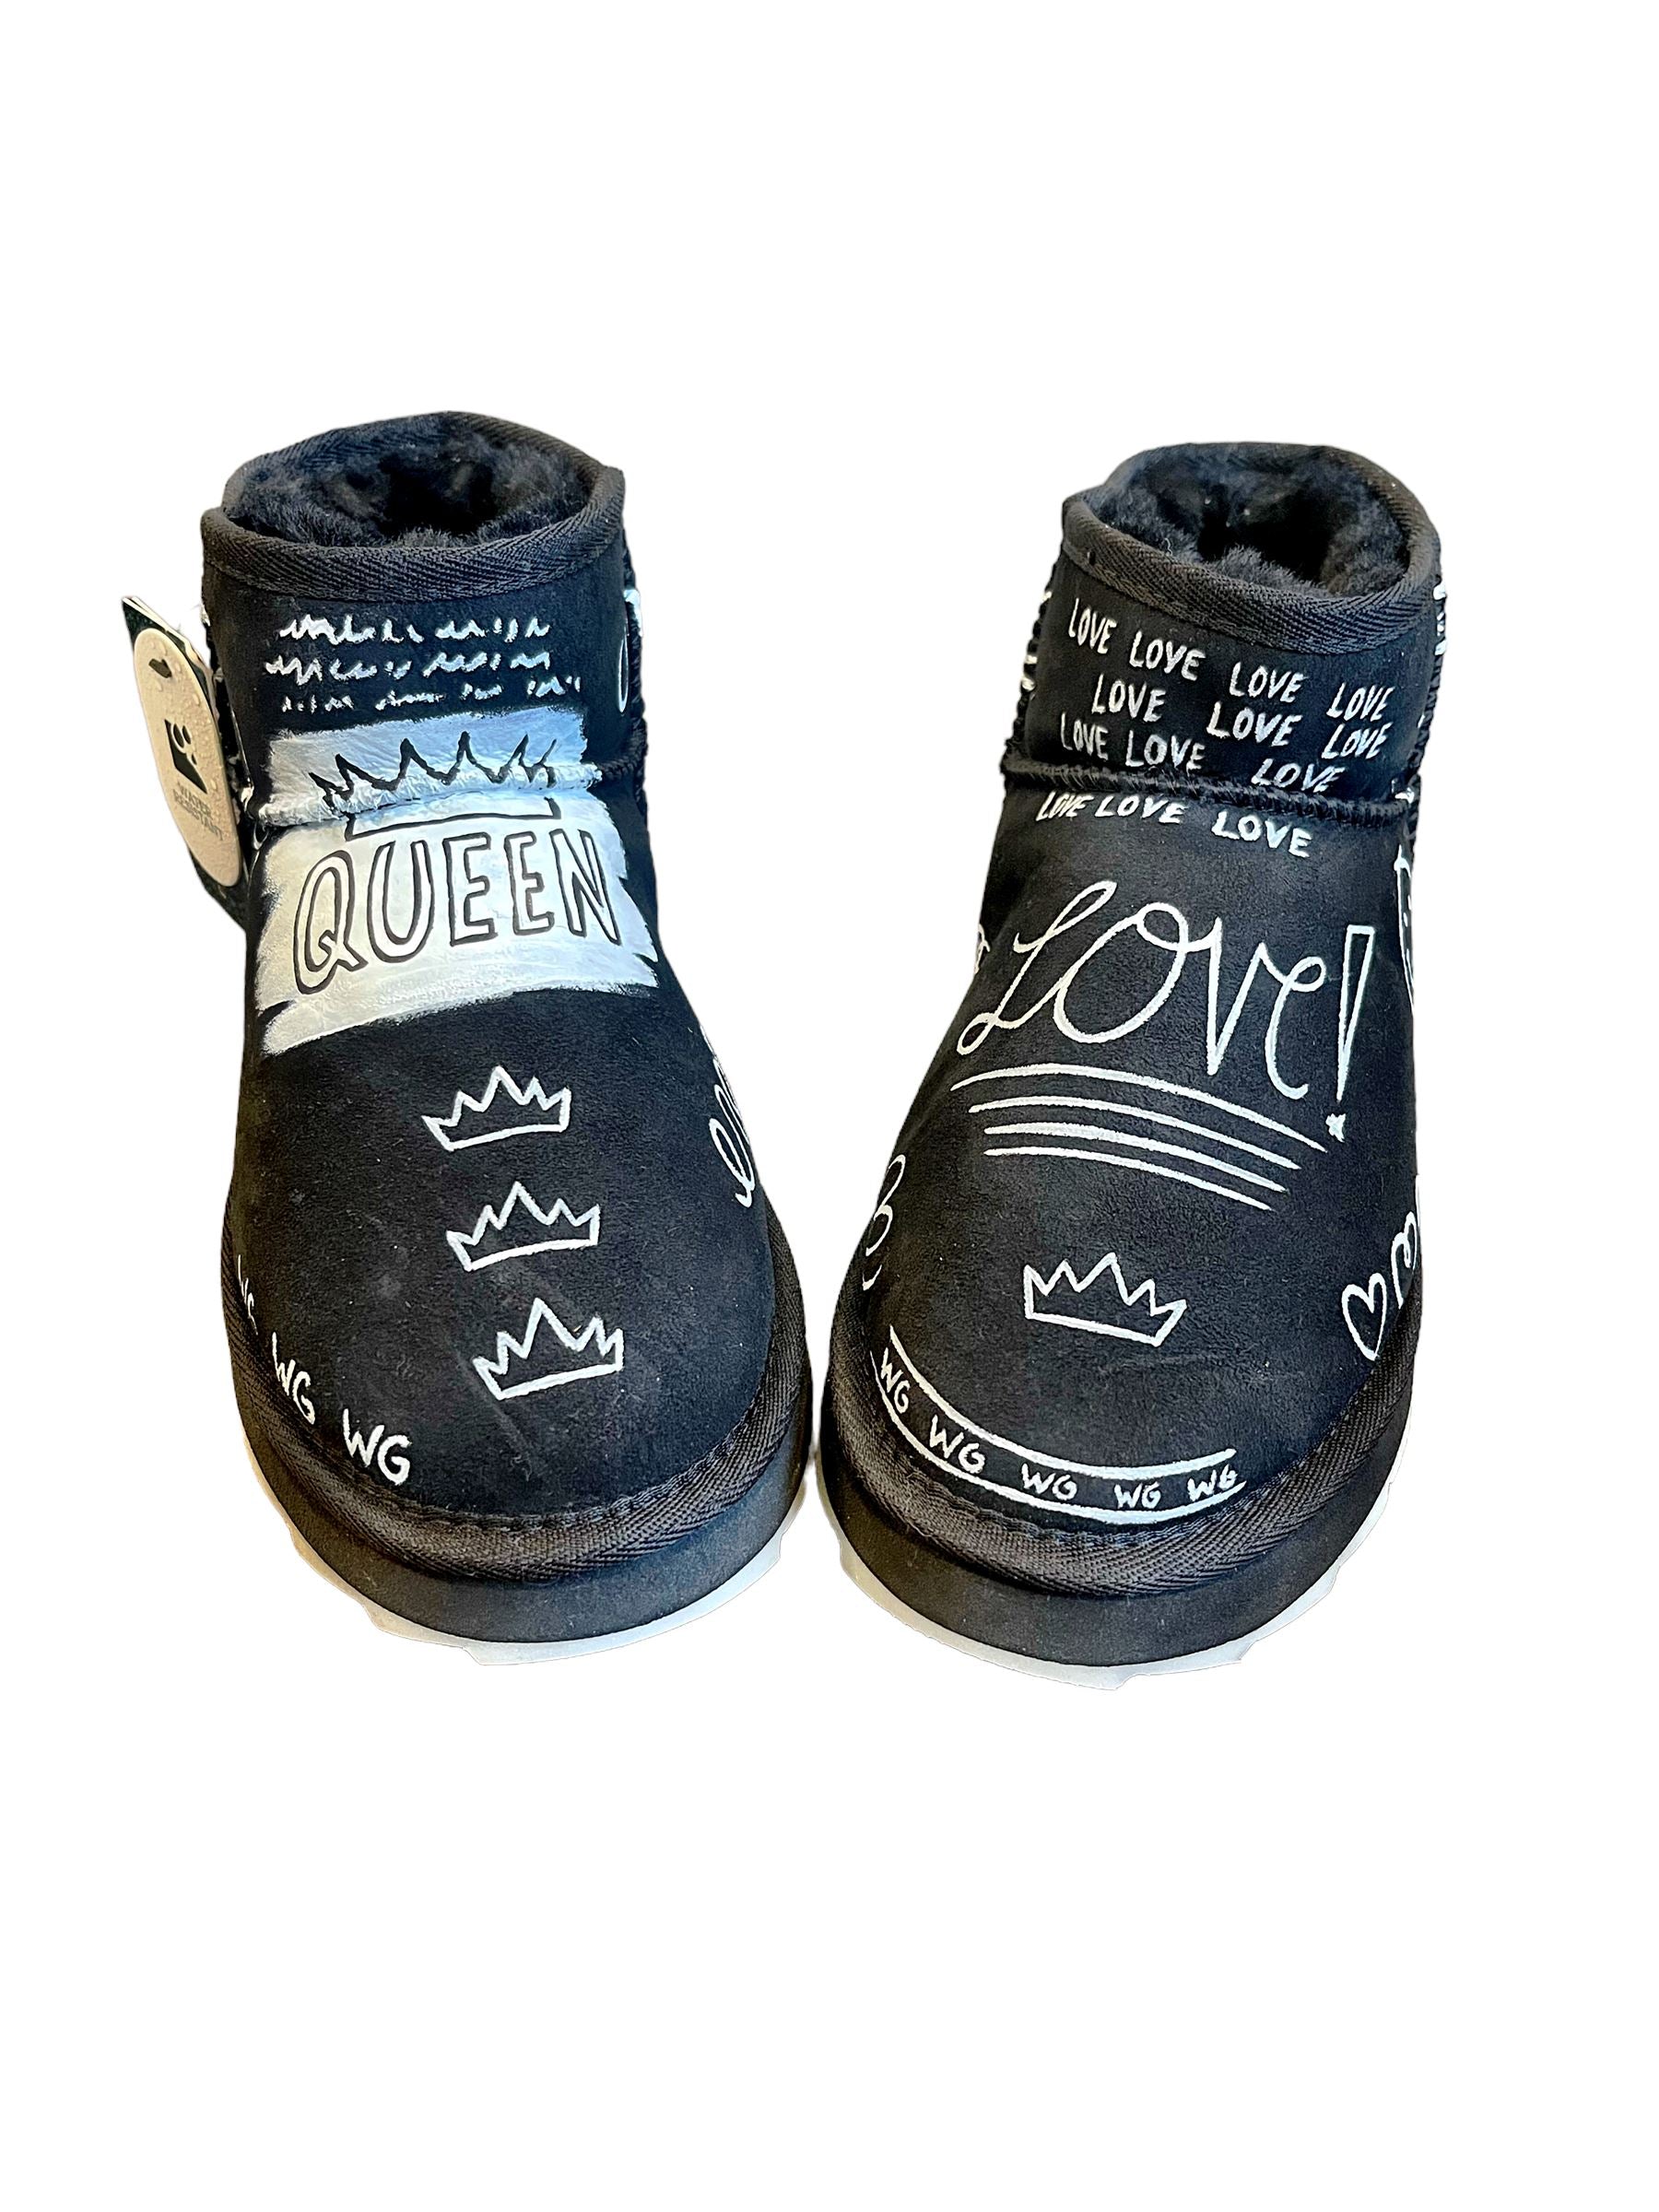 Graffiti Love' Painted Emu Boots